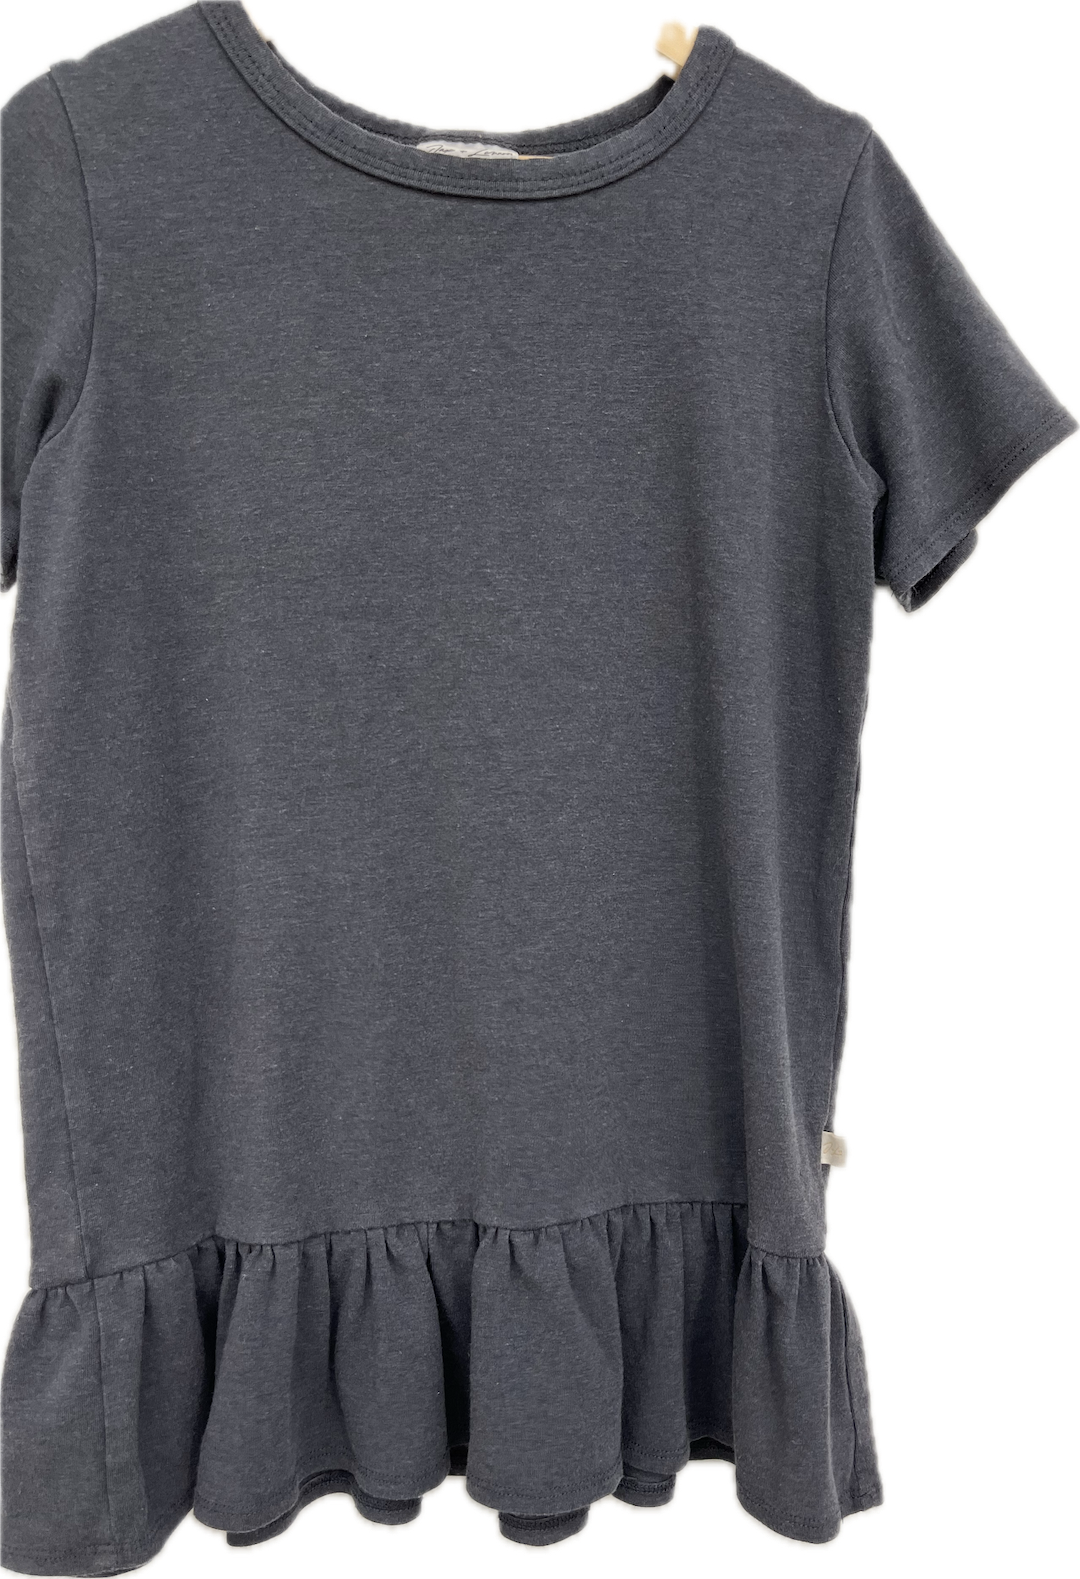 jax + lennon grey ruffle shirt 6Y